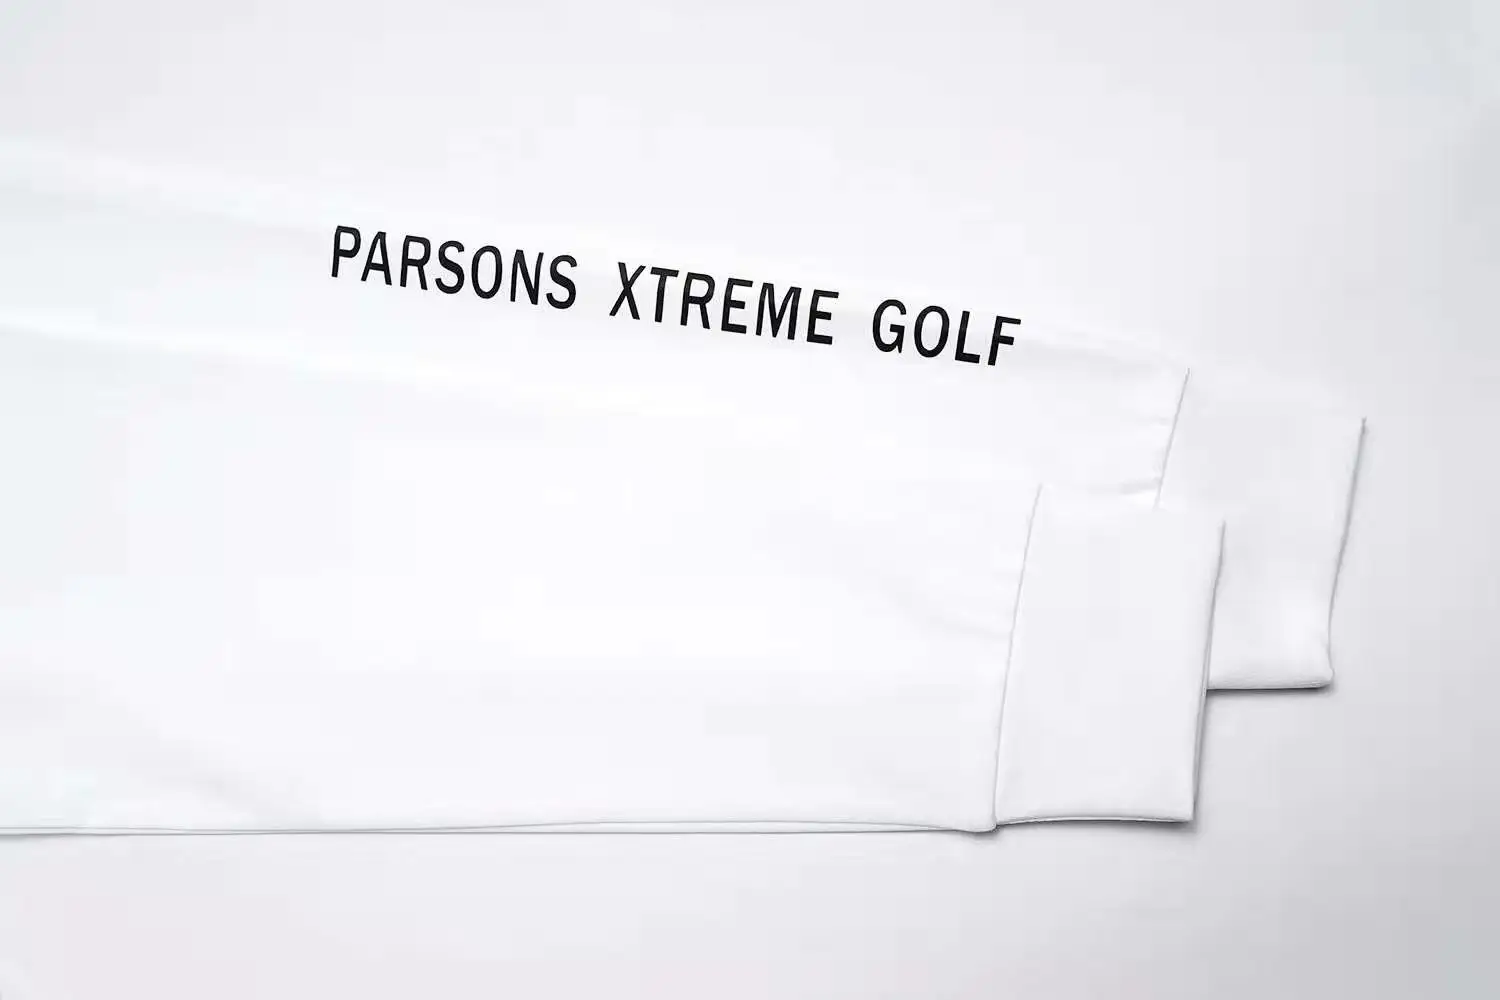 ZMen спортивная одежда с длинными рукавами футболка для гольфа 3 цвета одежда для гольфа s-xxl выбрать Досуг Одежда для гольфа